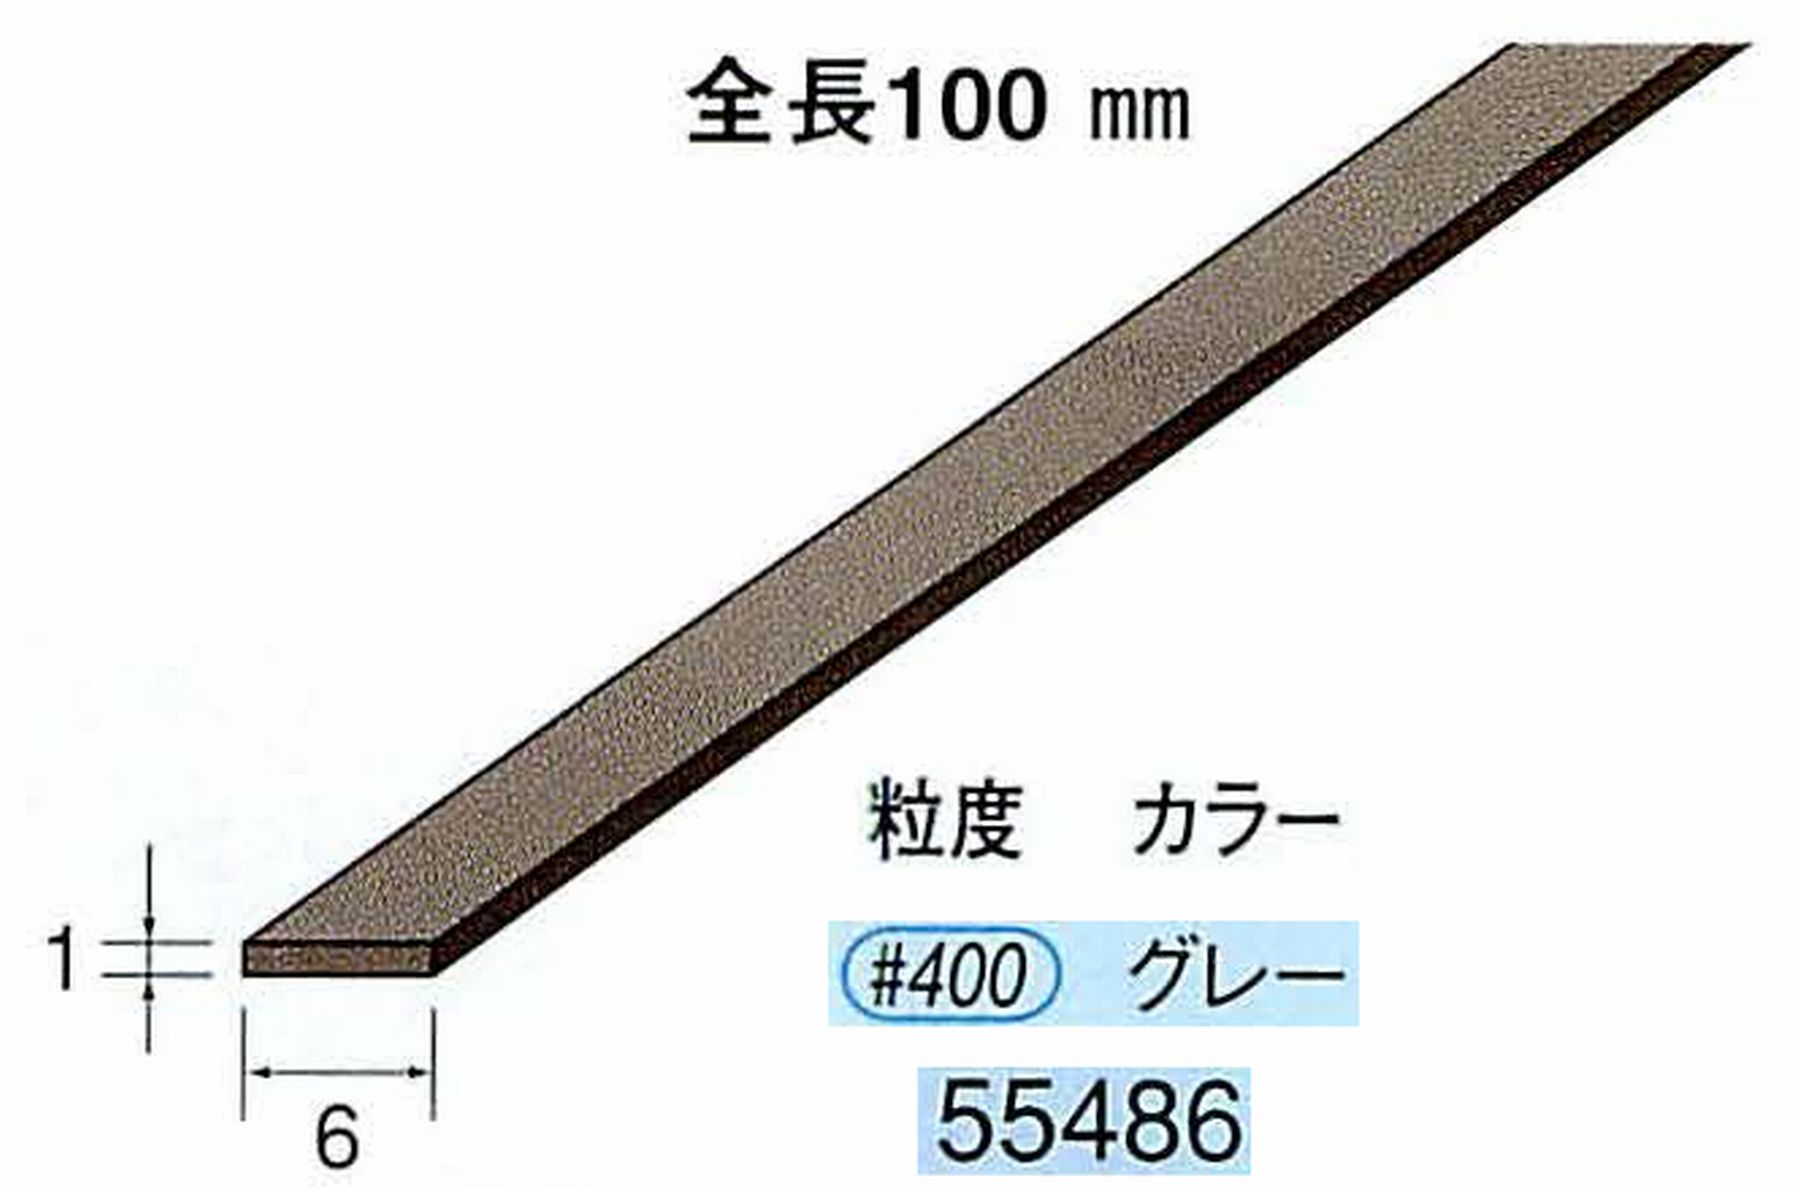 ナカニシ/NAKANISHI ダイヤモンドセラファイバー砥石 全長100mm グレー 55486